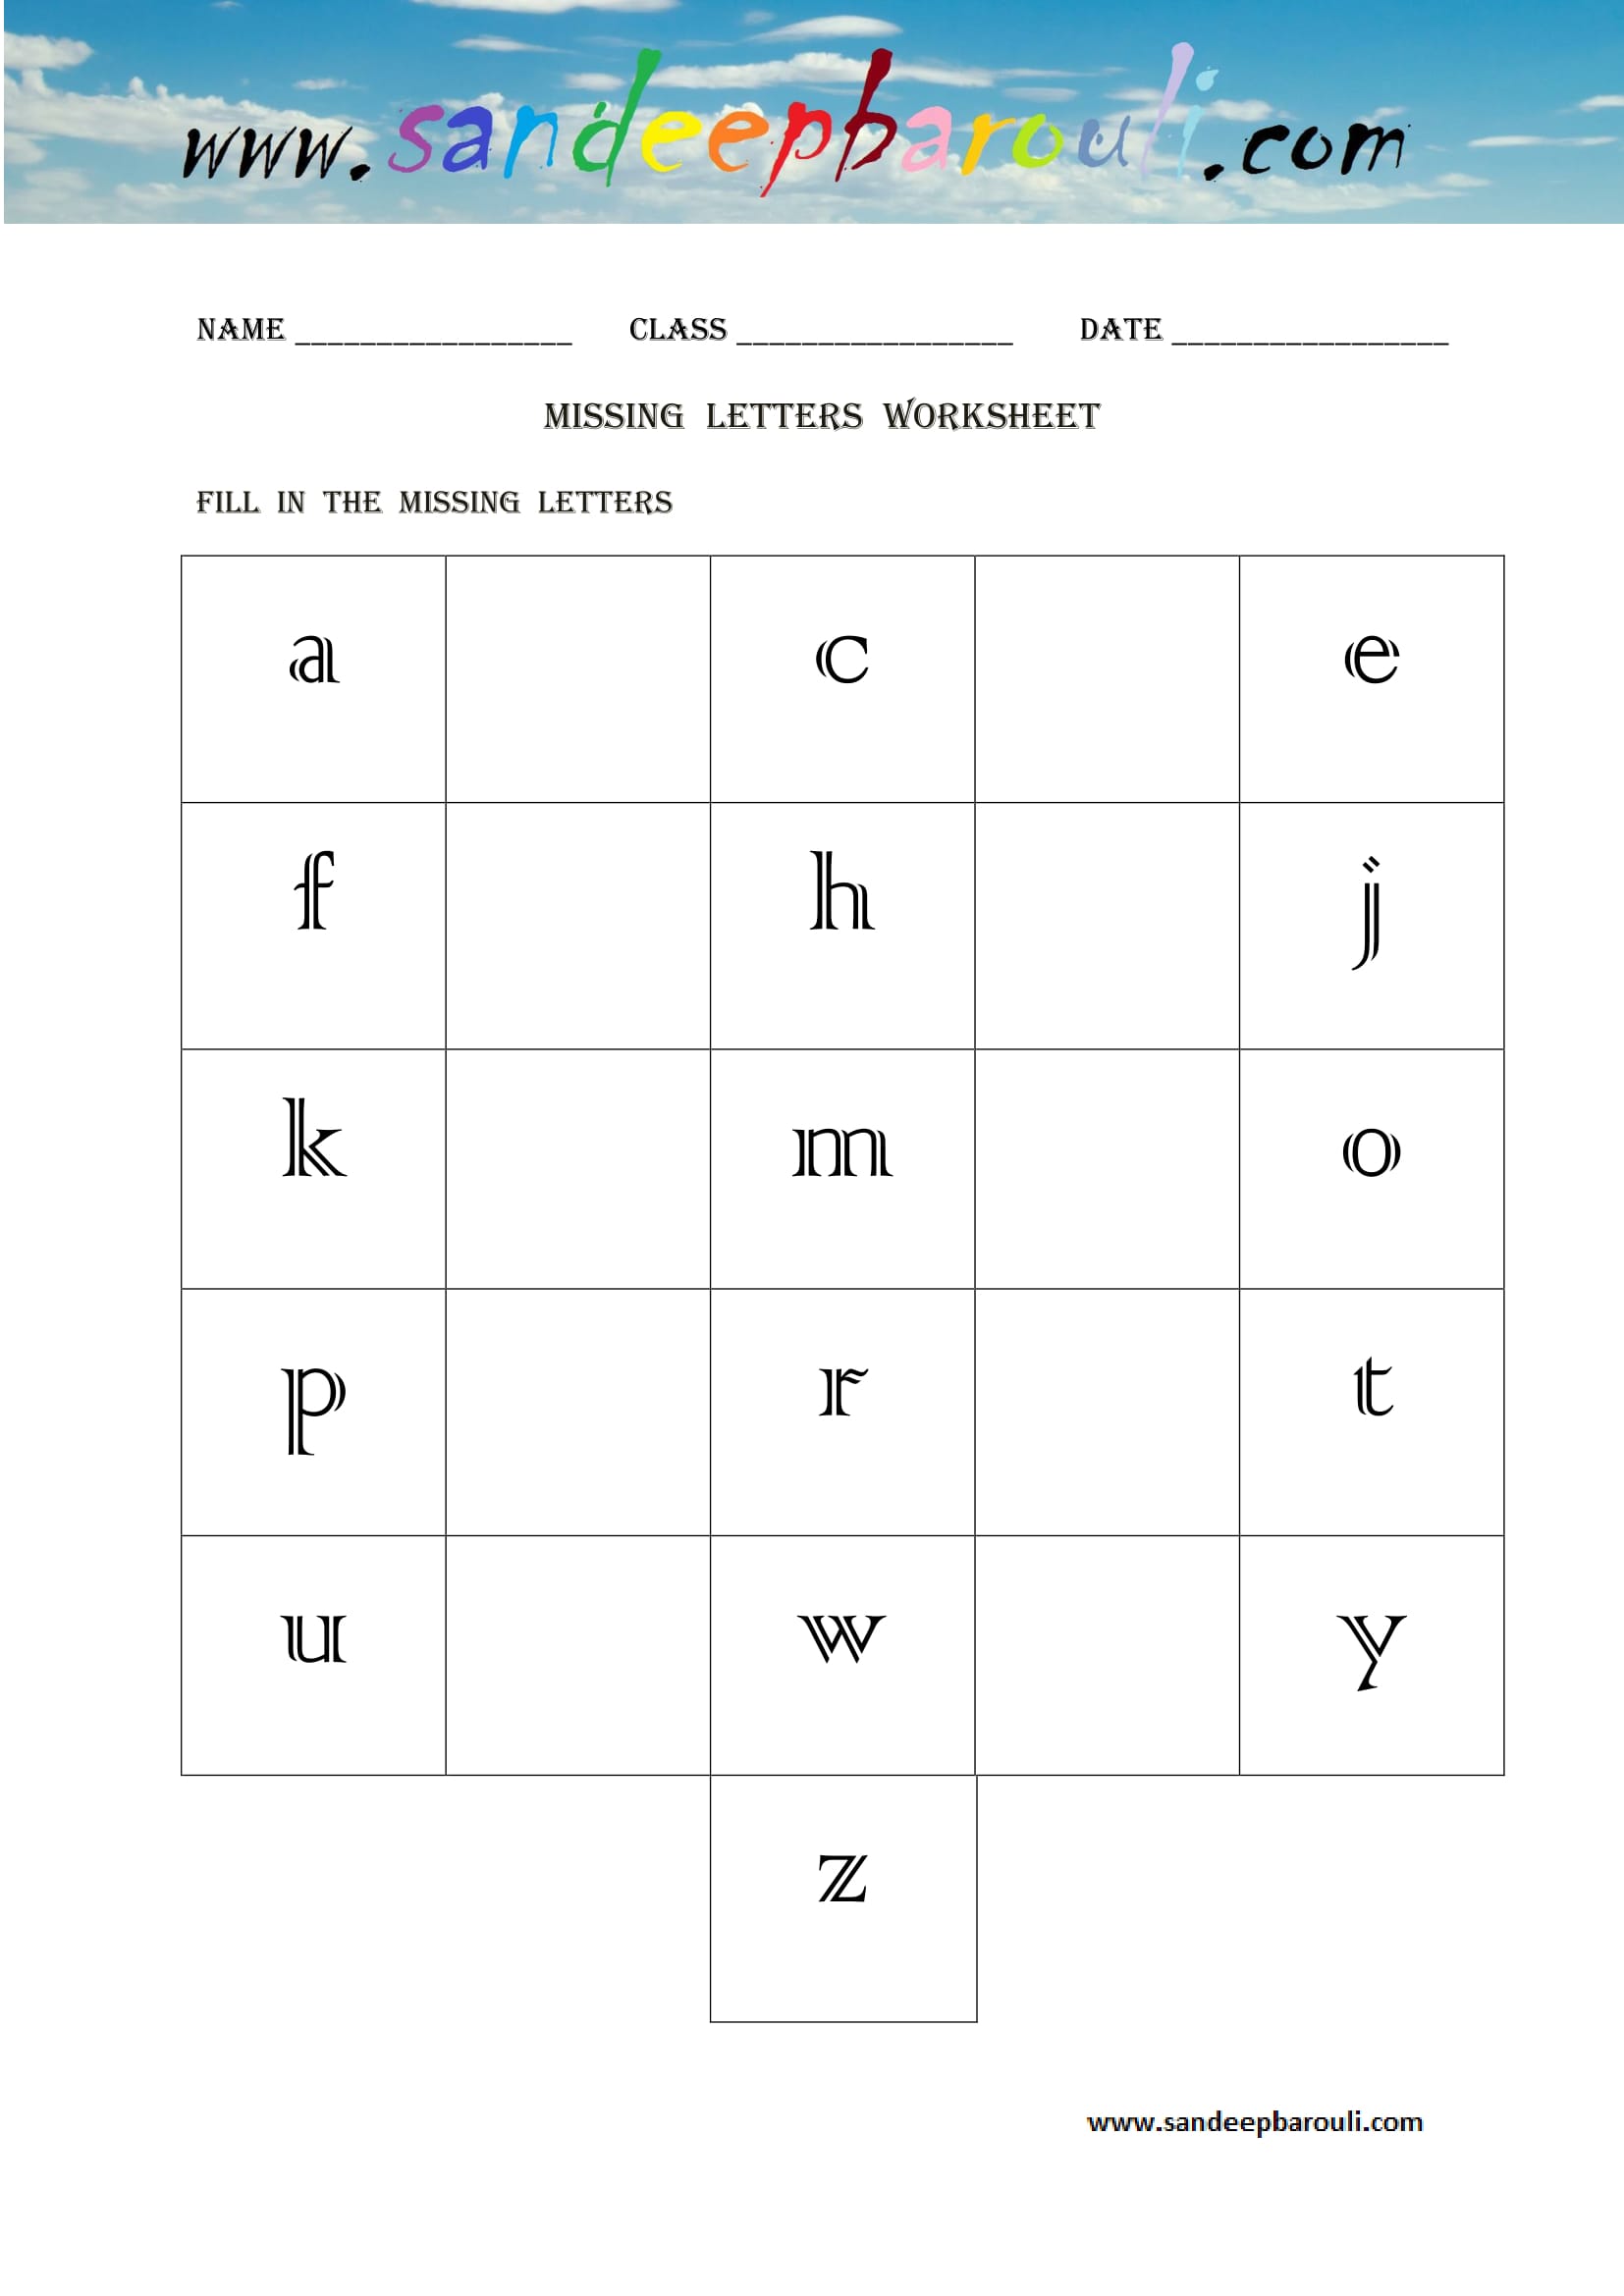 Missing letters Worksheet (17)